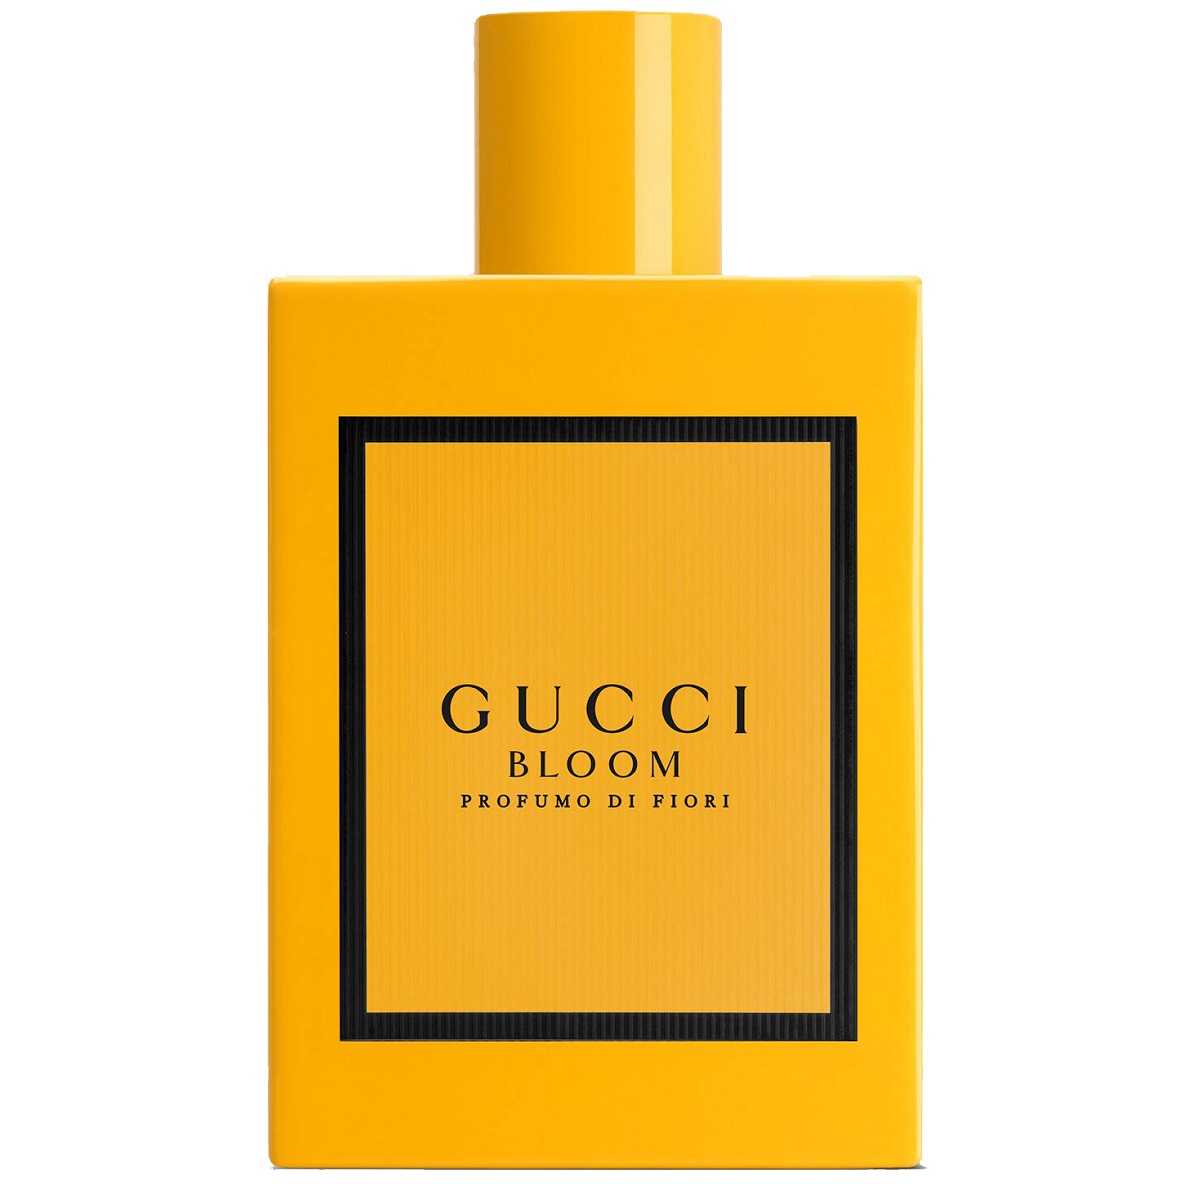 Gucci - Bloom Profumo Di Fiori (1мл)